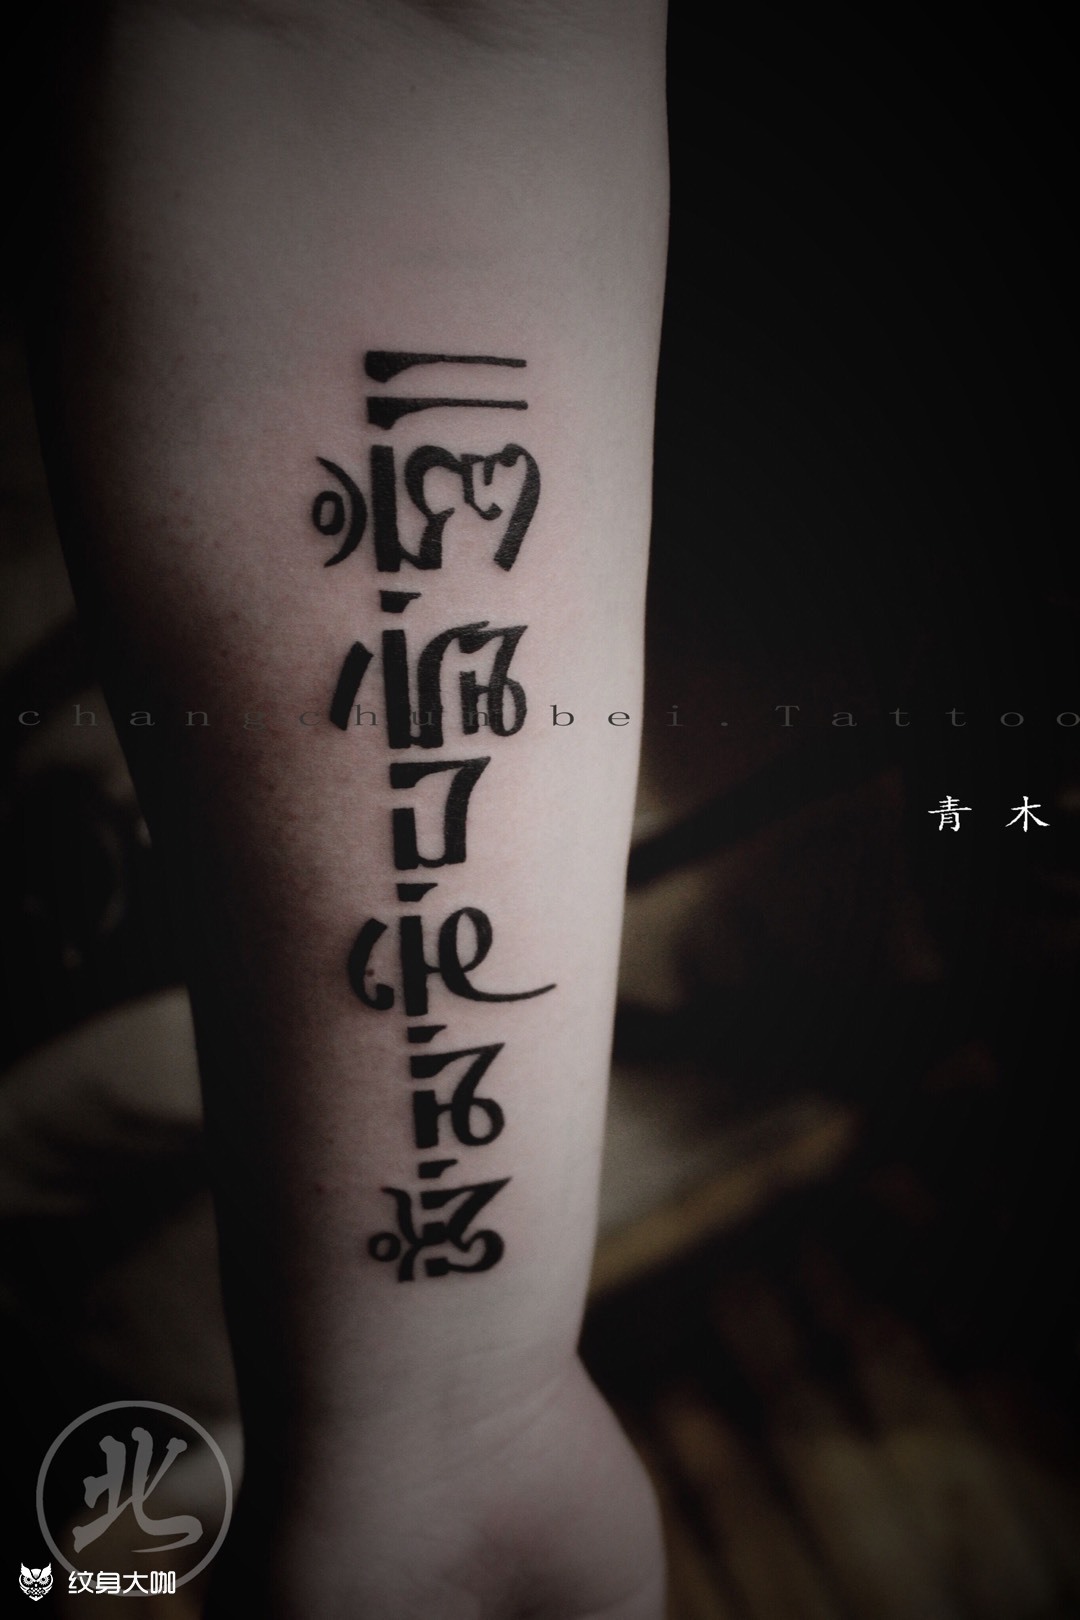 有意义的梵文纹身短句图片